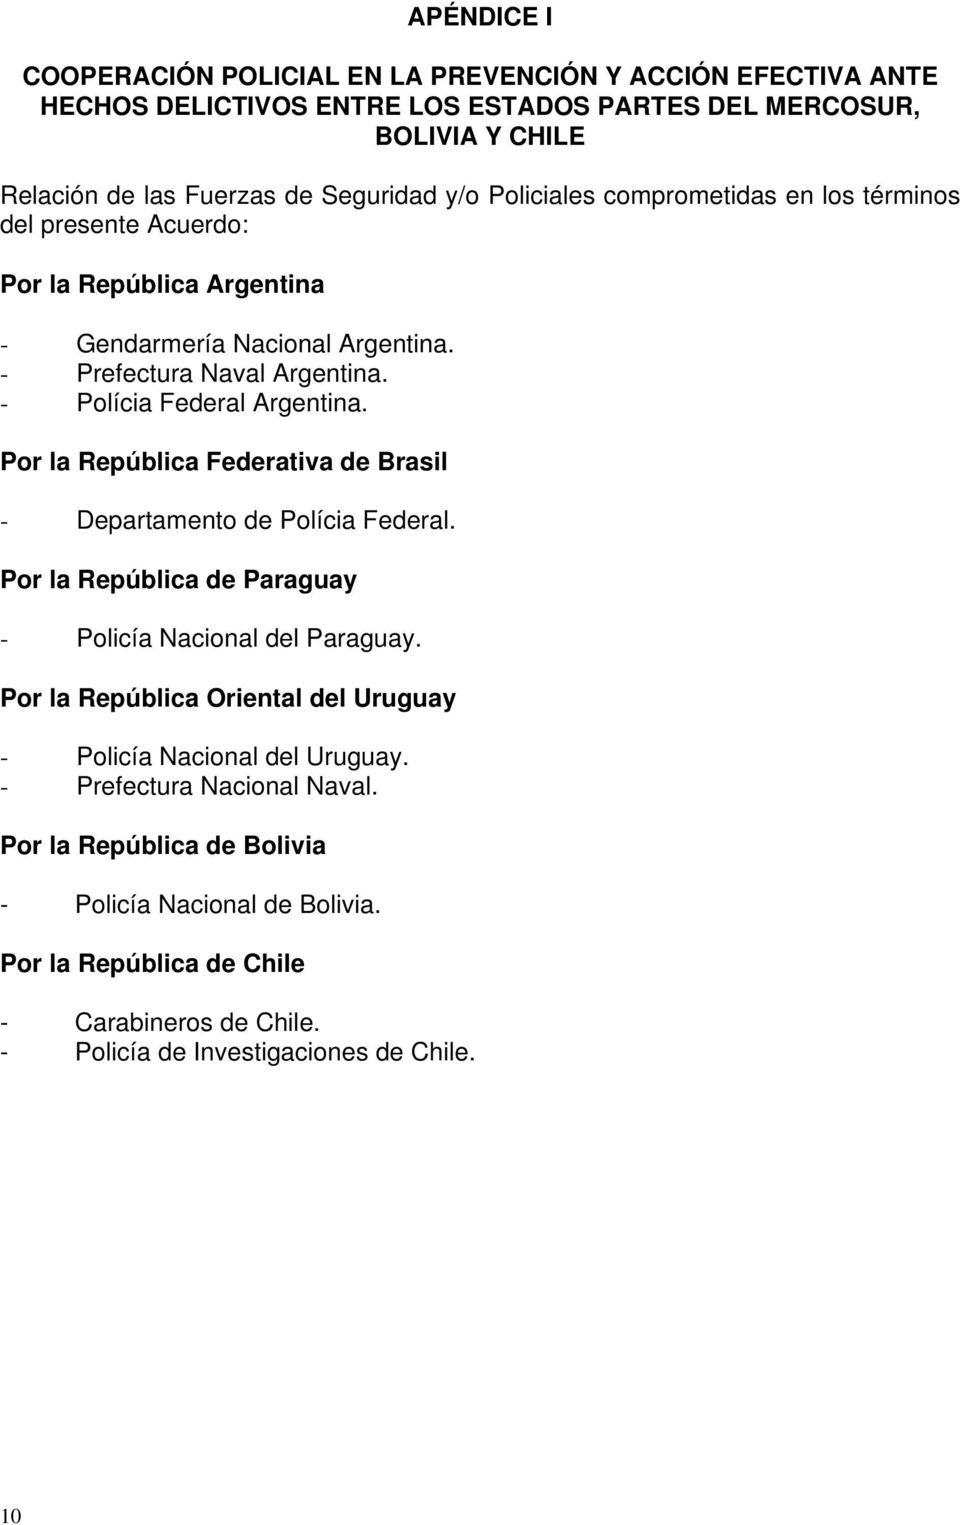 Por la República Federativa de Brasil - Departamento de Polícia Federal. Por la República de Paraguay - Policía Nacional del Paraguay.